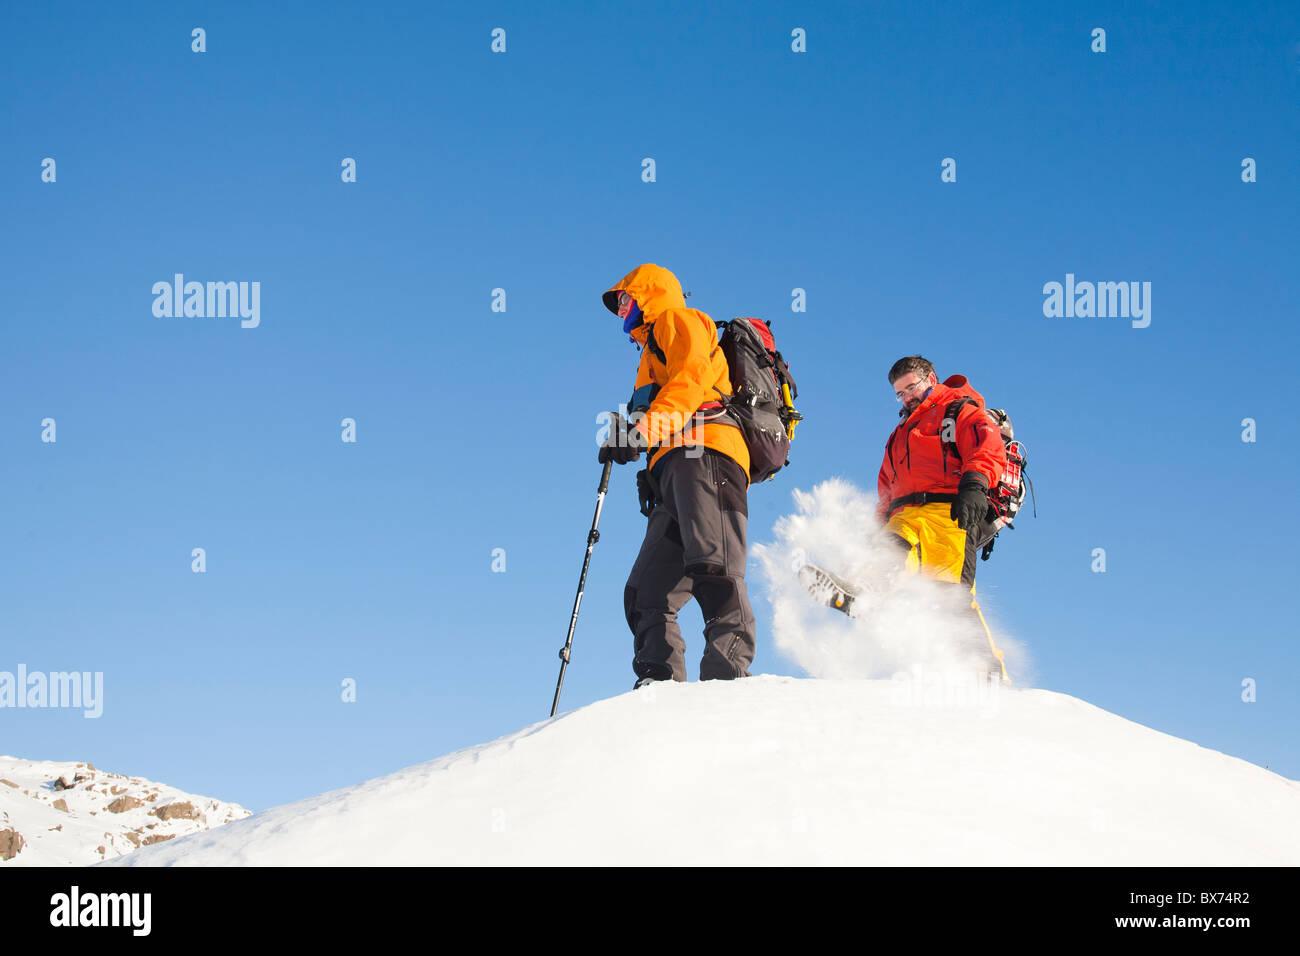 Gli alpinisti di essere eiettata dalla spindrift durante alta venti neve in movimento al di sopra di Grasmere nel Distretto del Lago, UK. Foto Stock